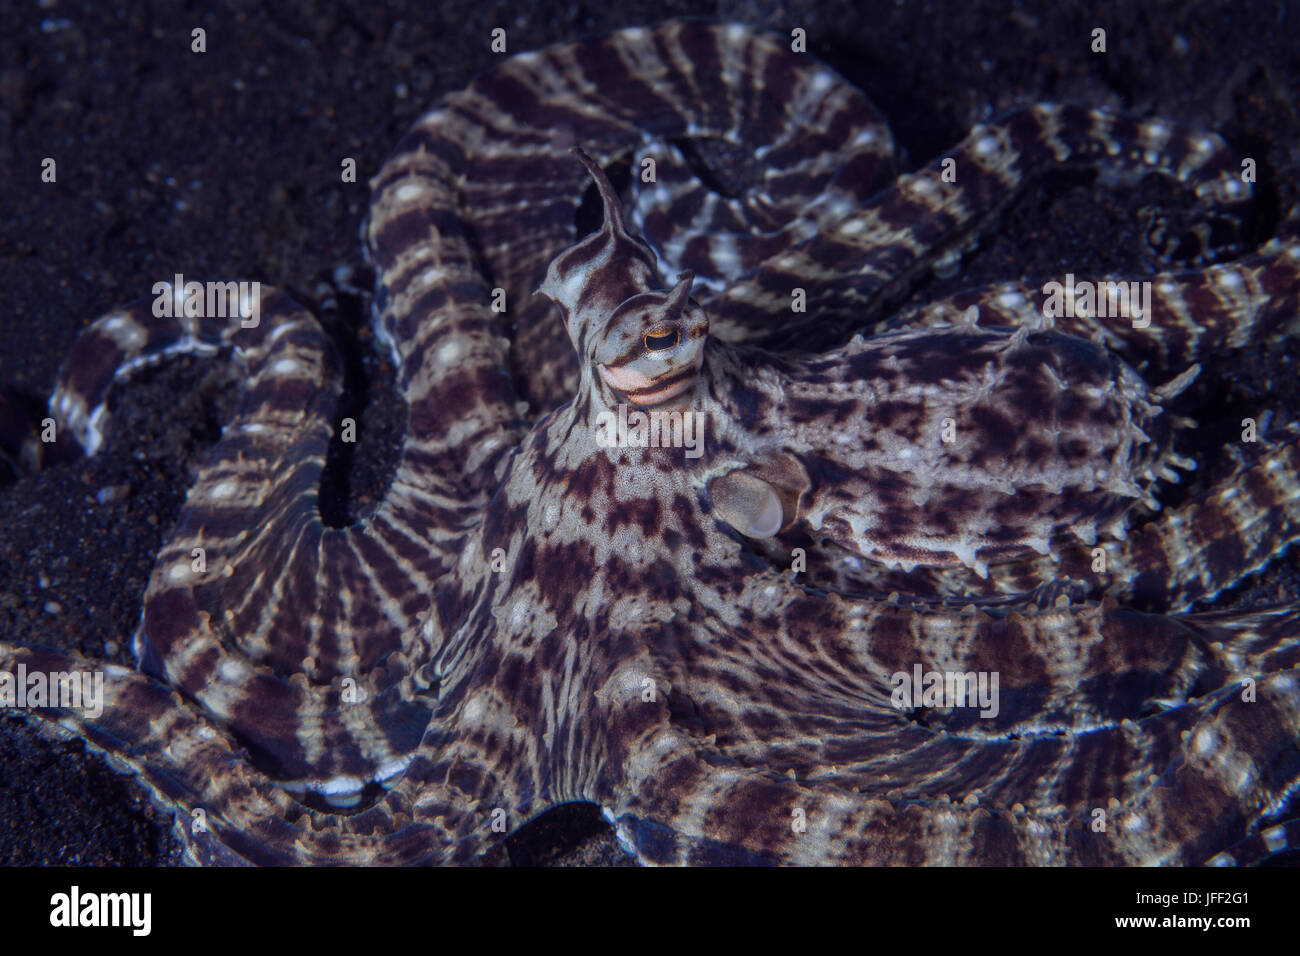 Schließen Sie herauf Bild der Mimik Oktopus (Thaumoctopu Mimicus) Aufzucht seinen Kopf. Lembeh Straße, Indonesien. Stockfoto